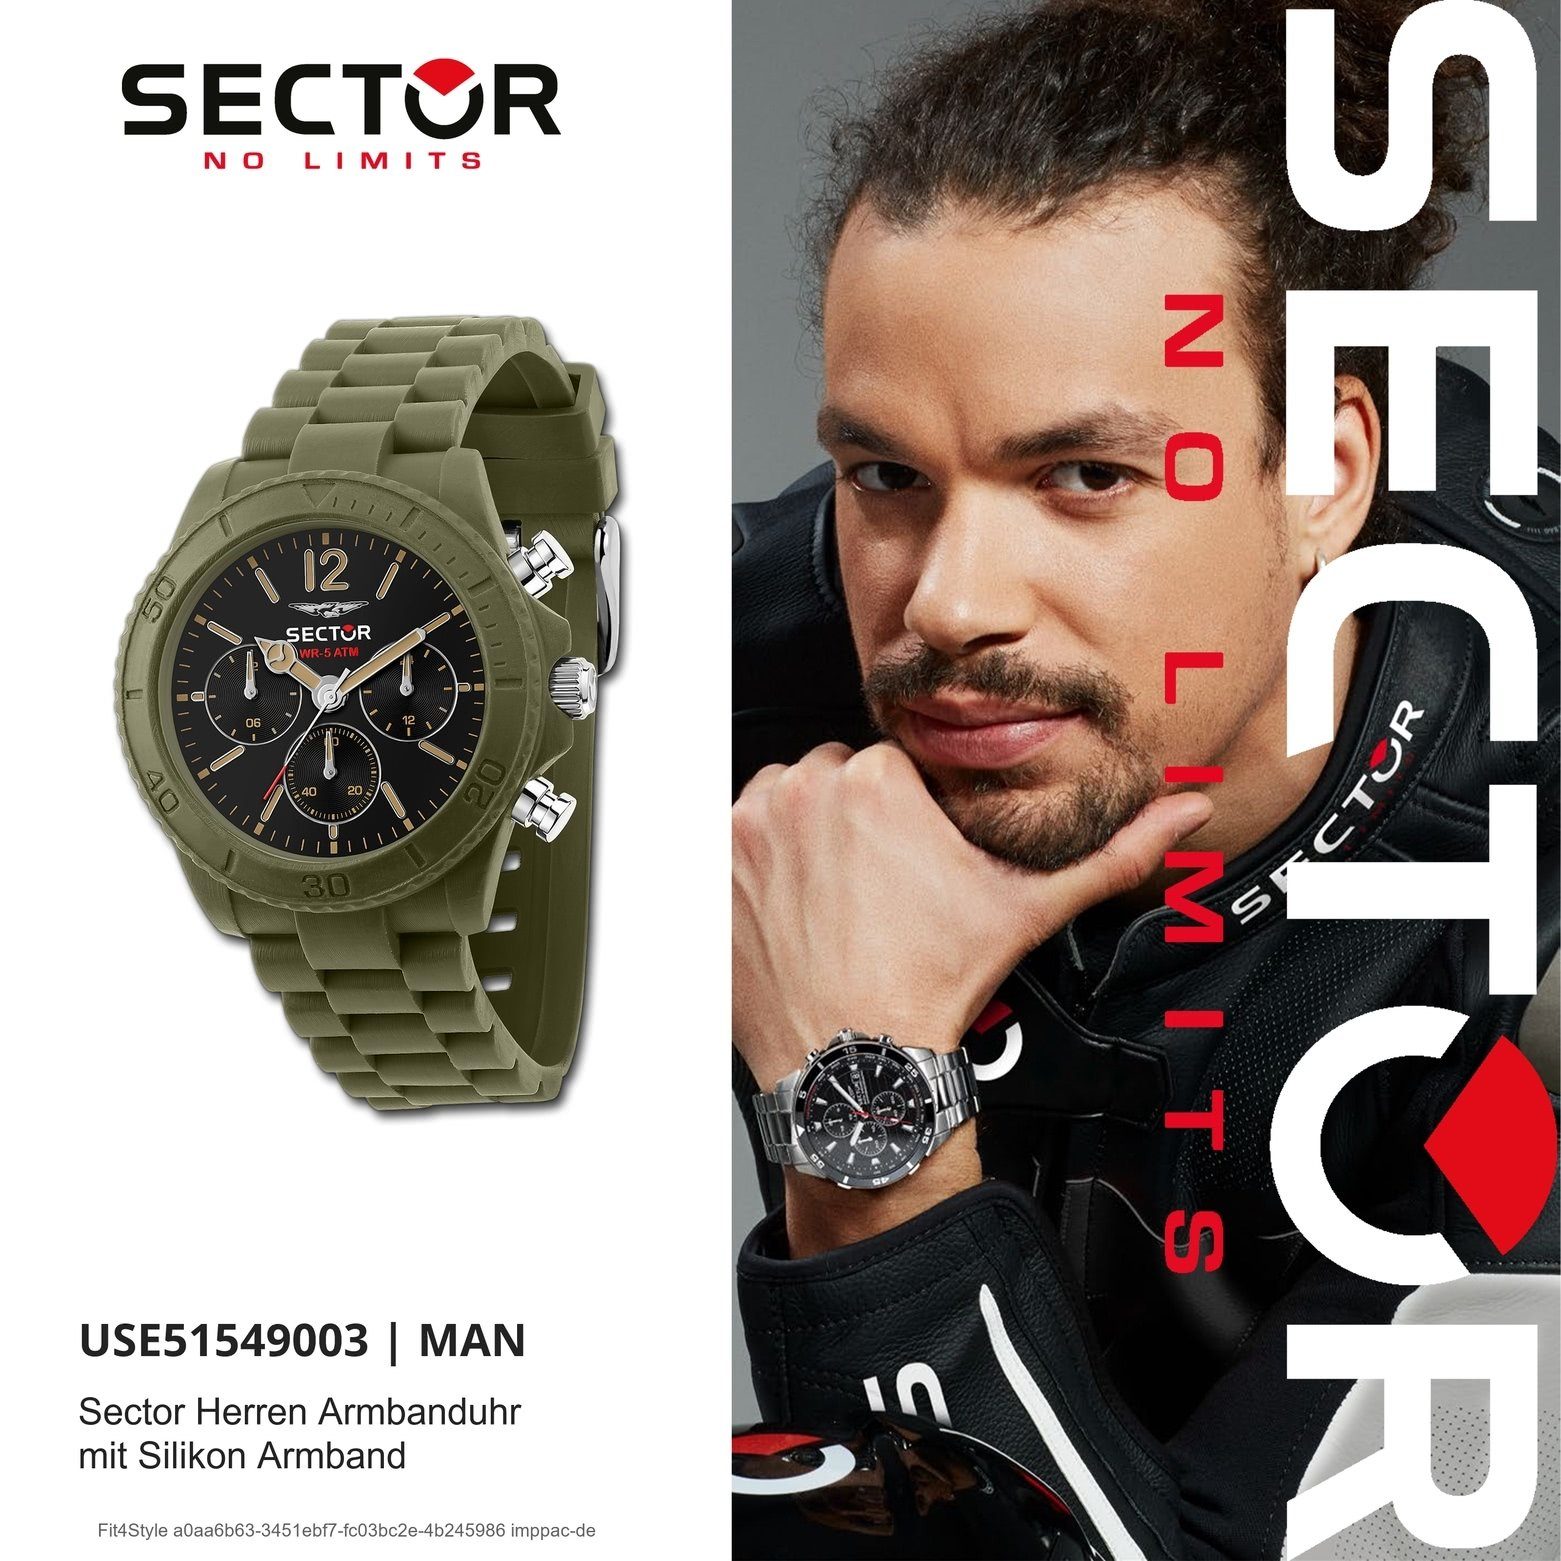 Sector Multifunktionsuhr Sector (ca. Herren Fashion groß 45mm), Silikonarmband Multifunktion, Armbanduhr Herren Armbanduhr rund, grün